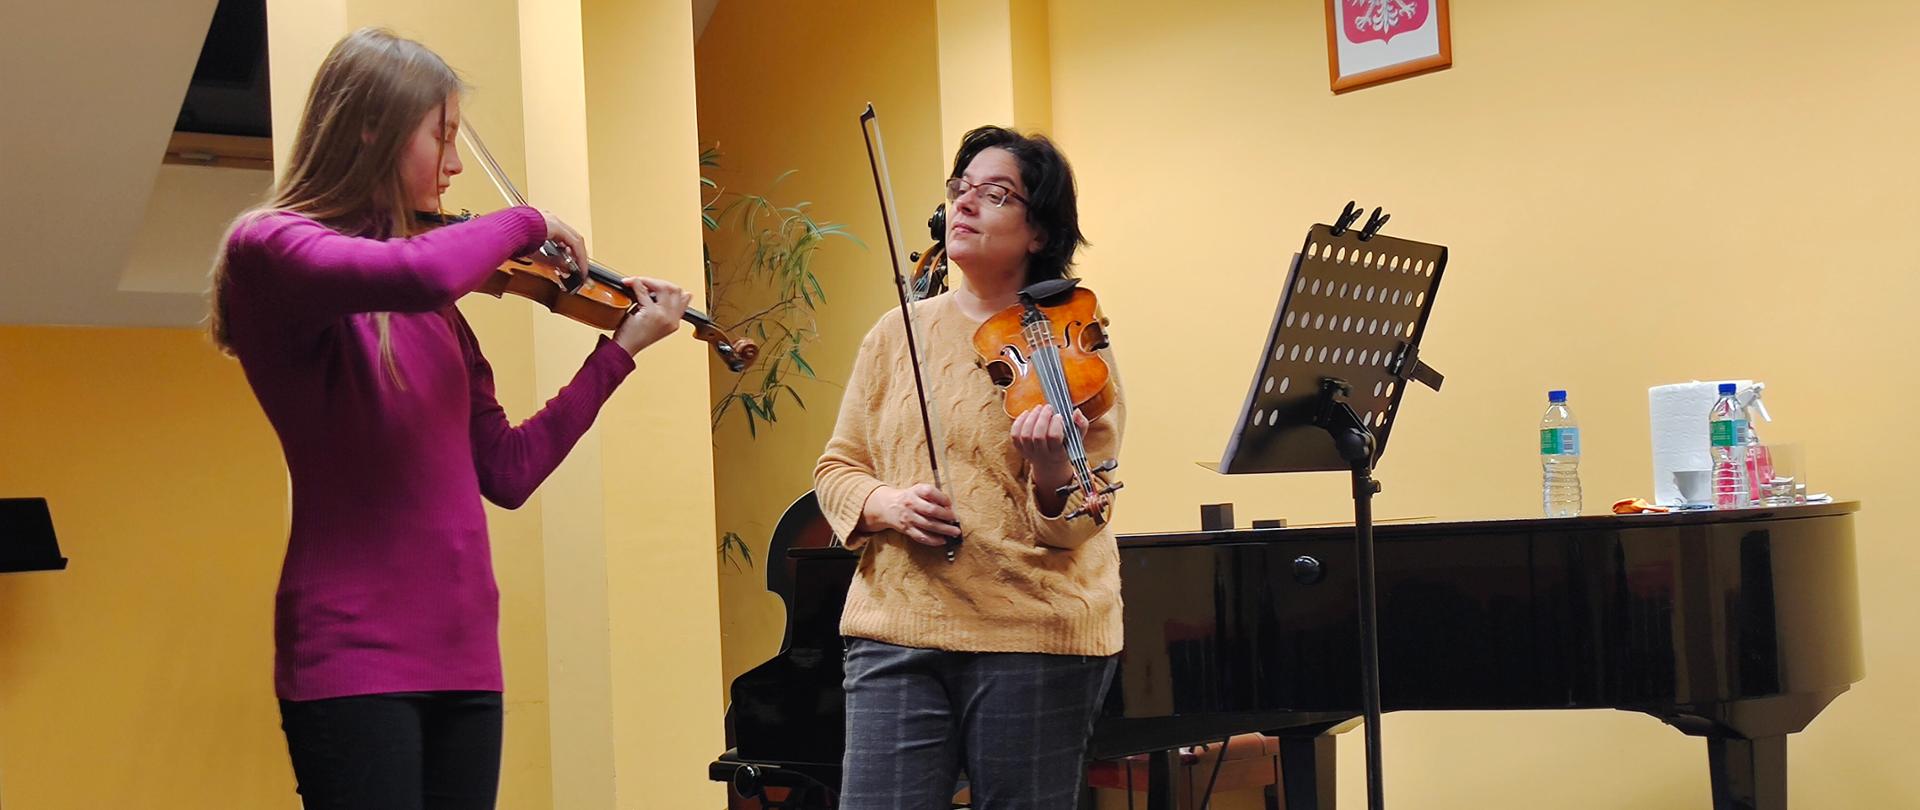 Zdjęcie przedstawia nauczyciela i ucznia podczas lekcji gry na skrzypcach